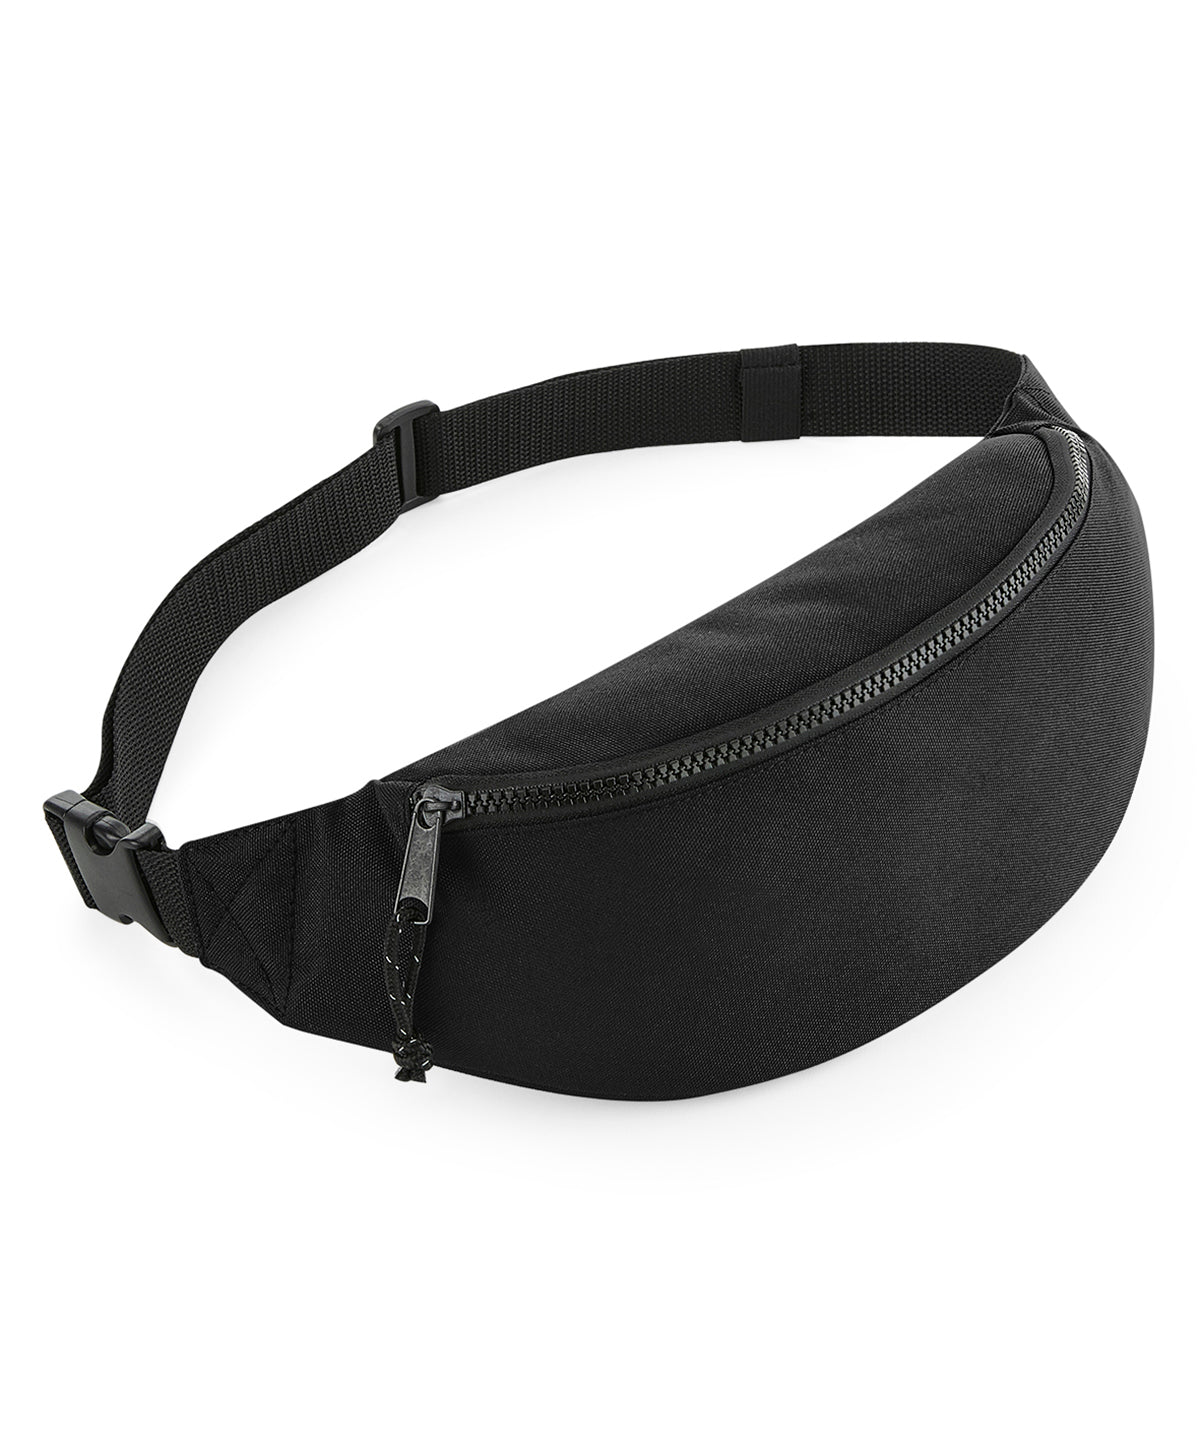 Personalised Bags - Black Bagbase Recycled waistpack